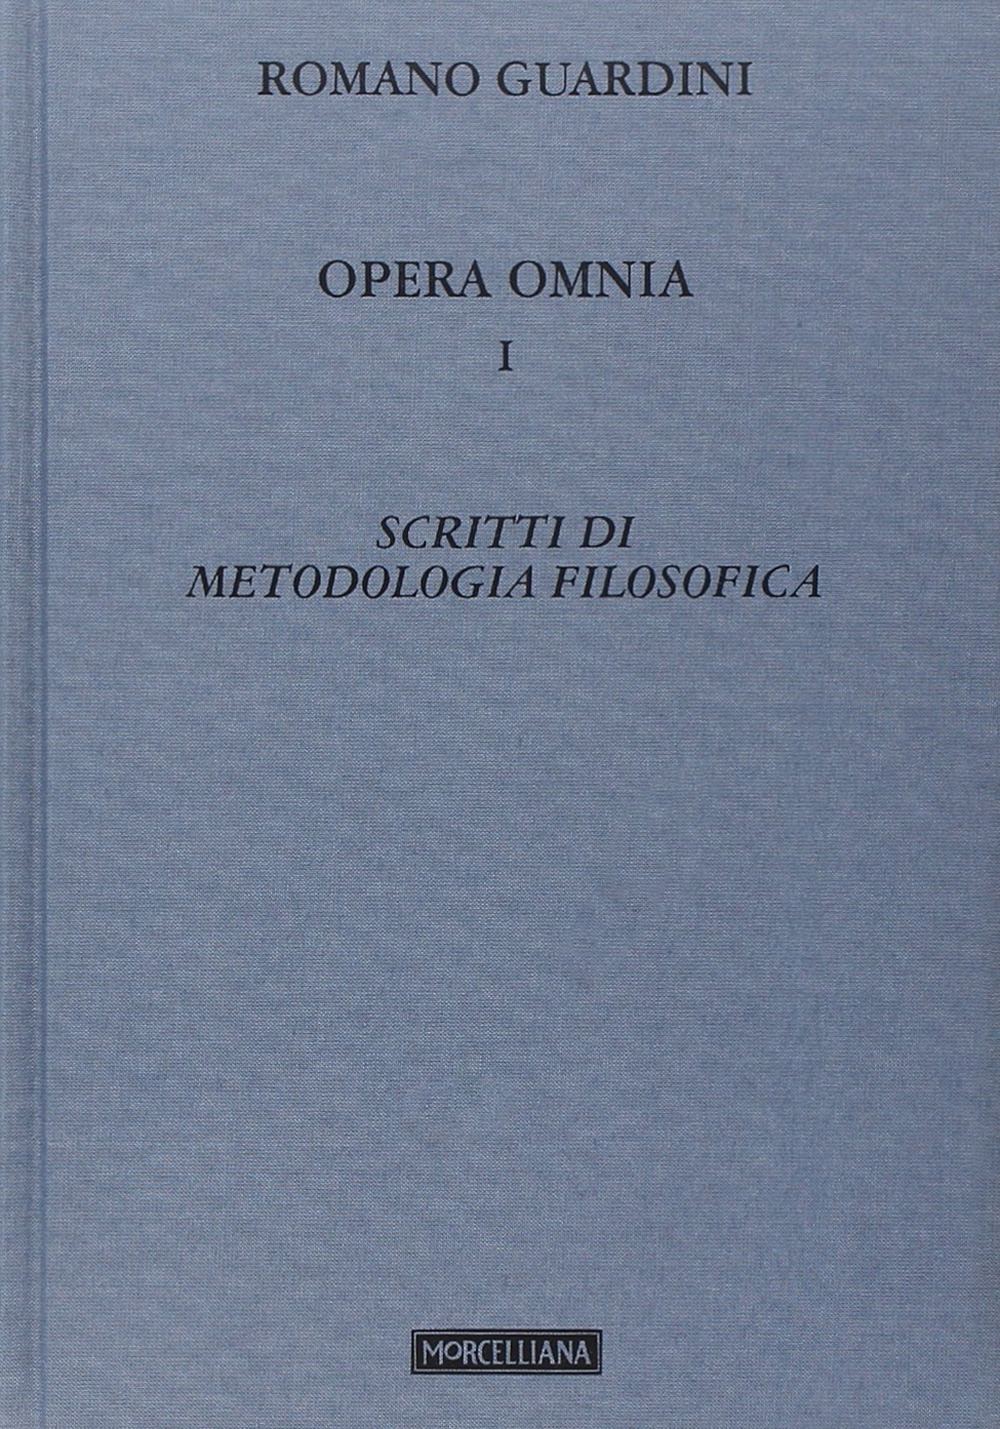 Opera omnia. Vol. 1: Scritti di metodologia filosofica